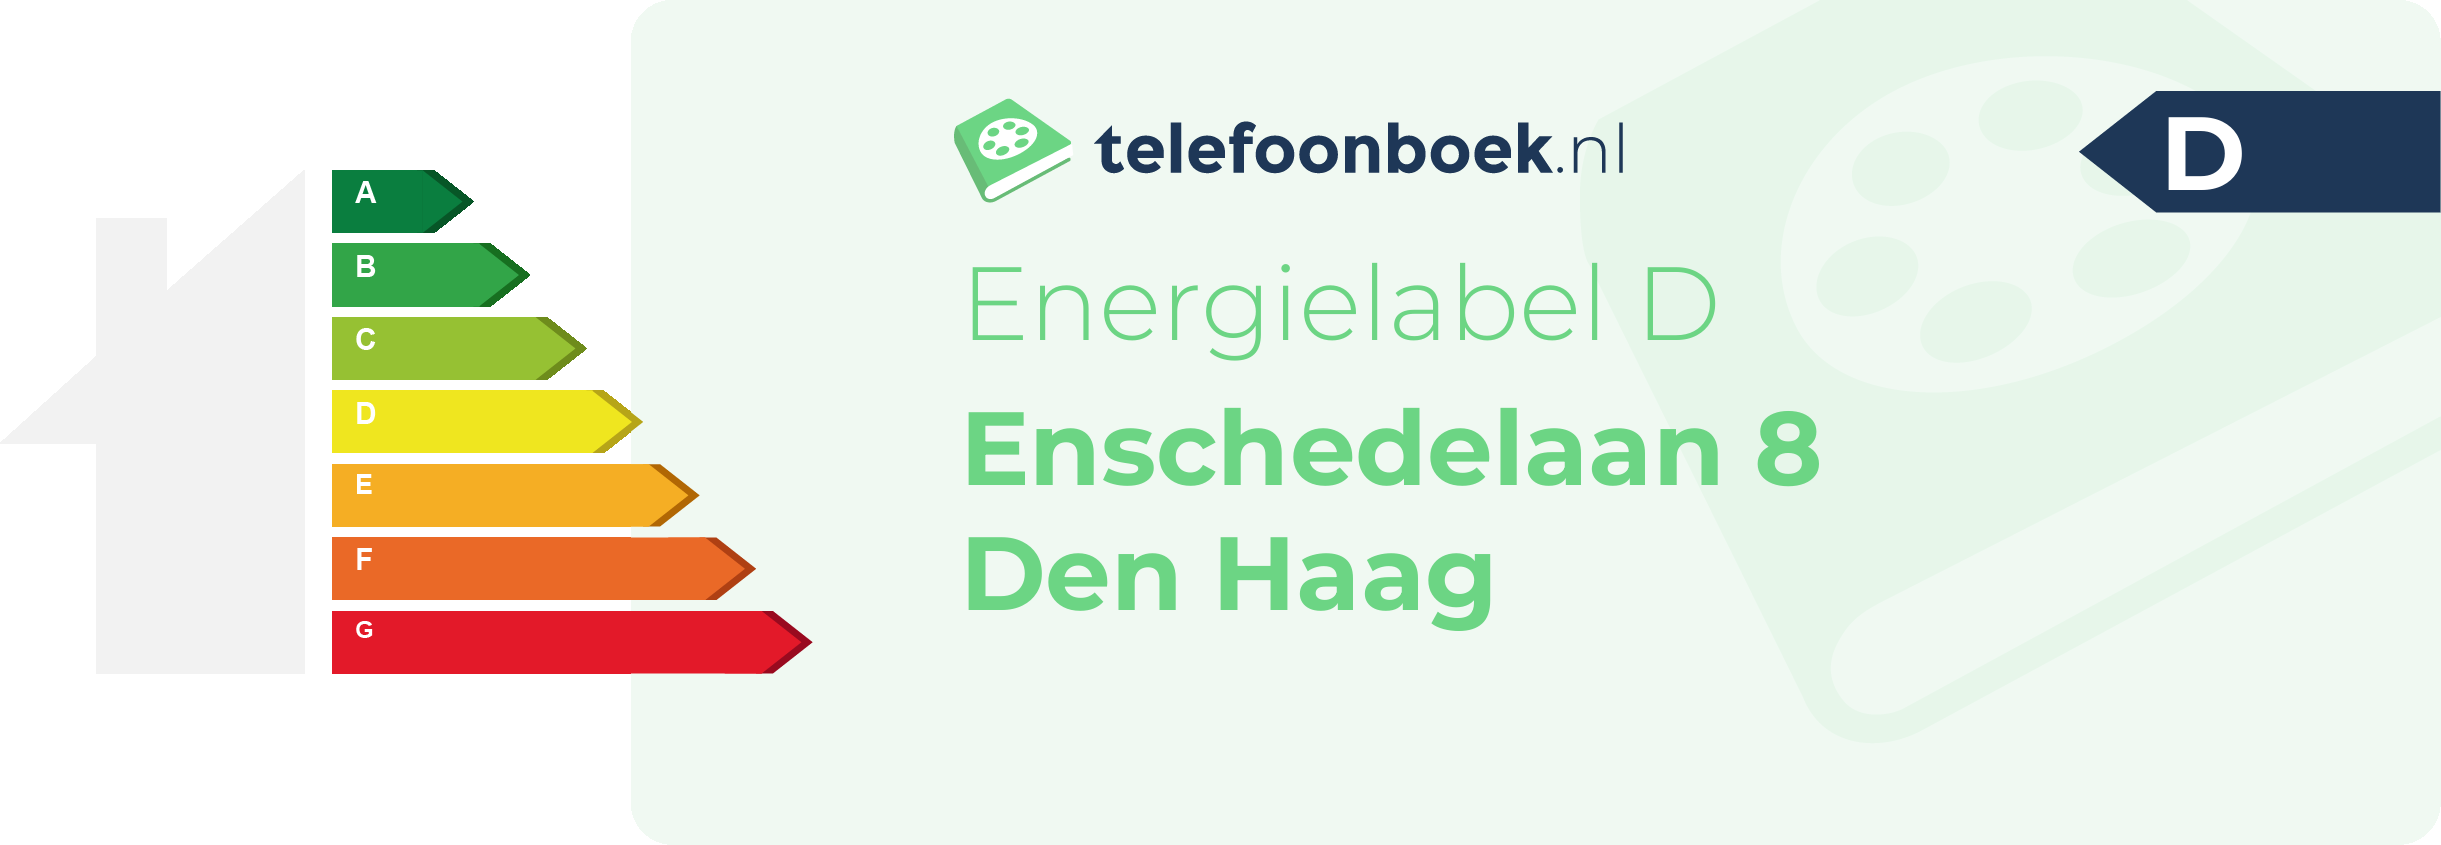 Energielabel Enschedelaan 8 Den Haag